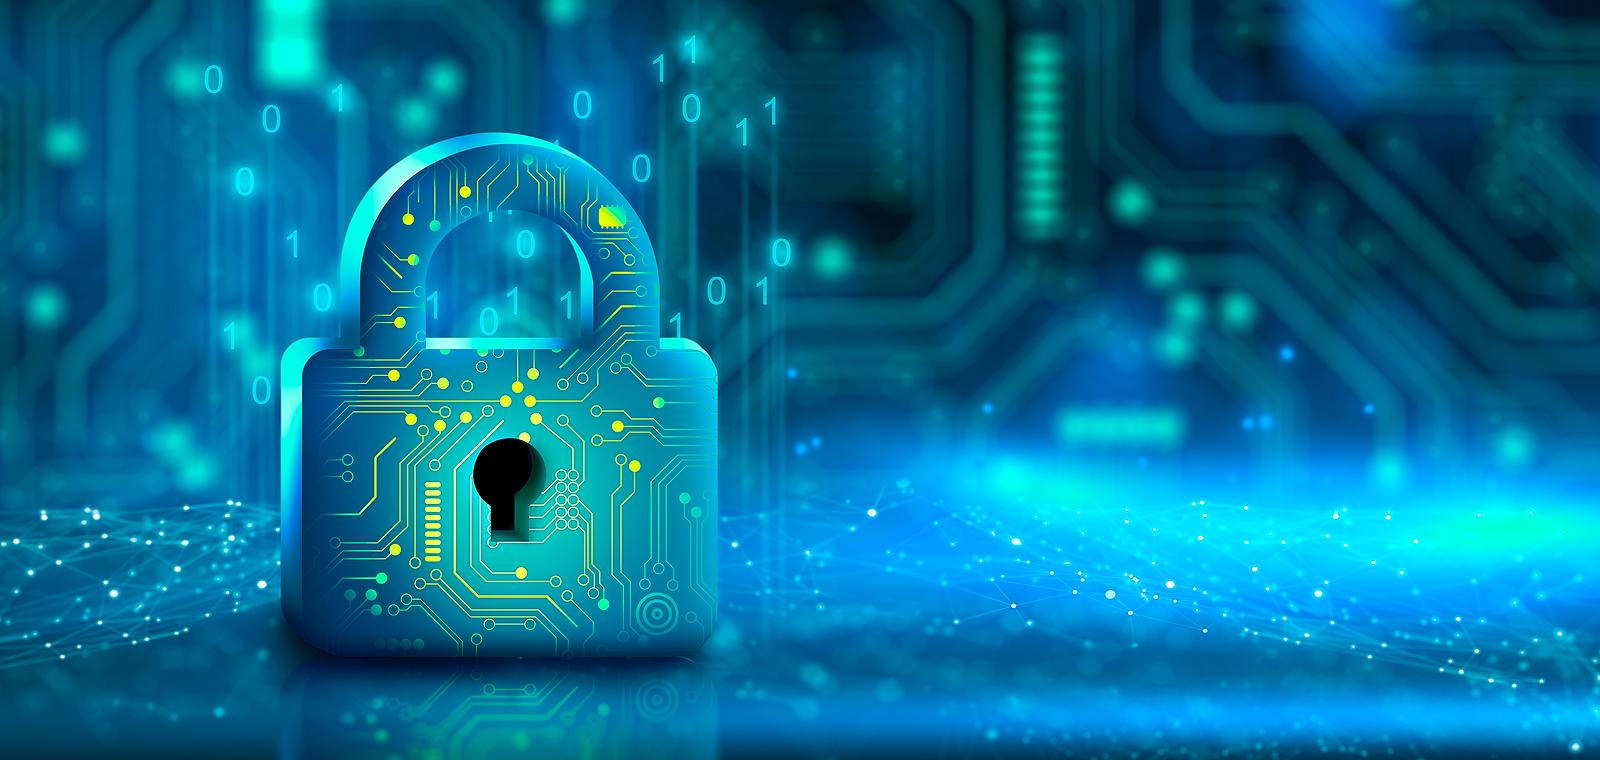 Cybersécurité : Comment résoudre le casse-tête quotidien  de la priorisation des vulnérabilités ?